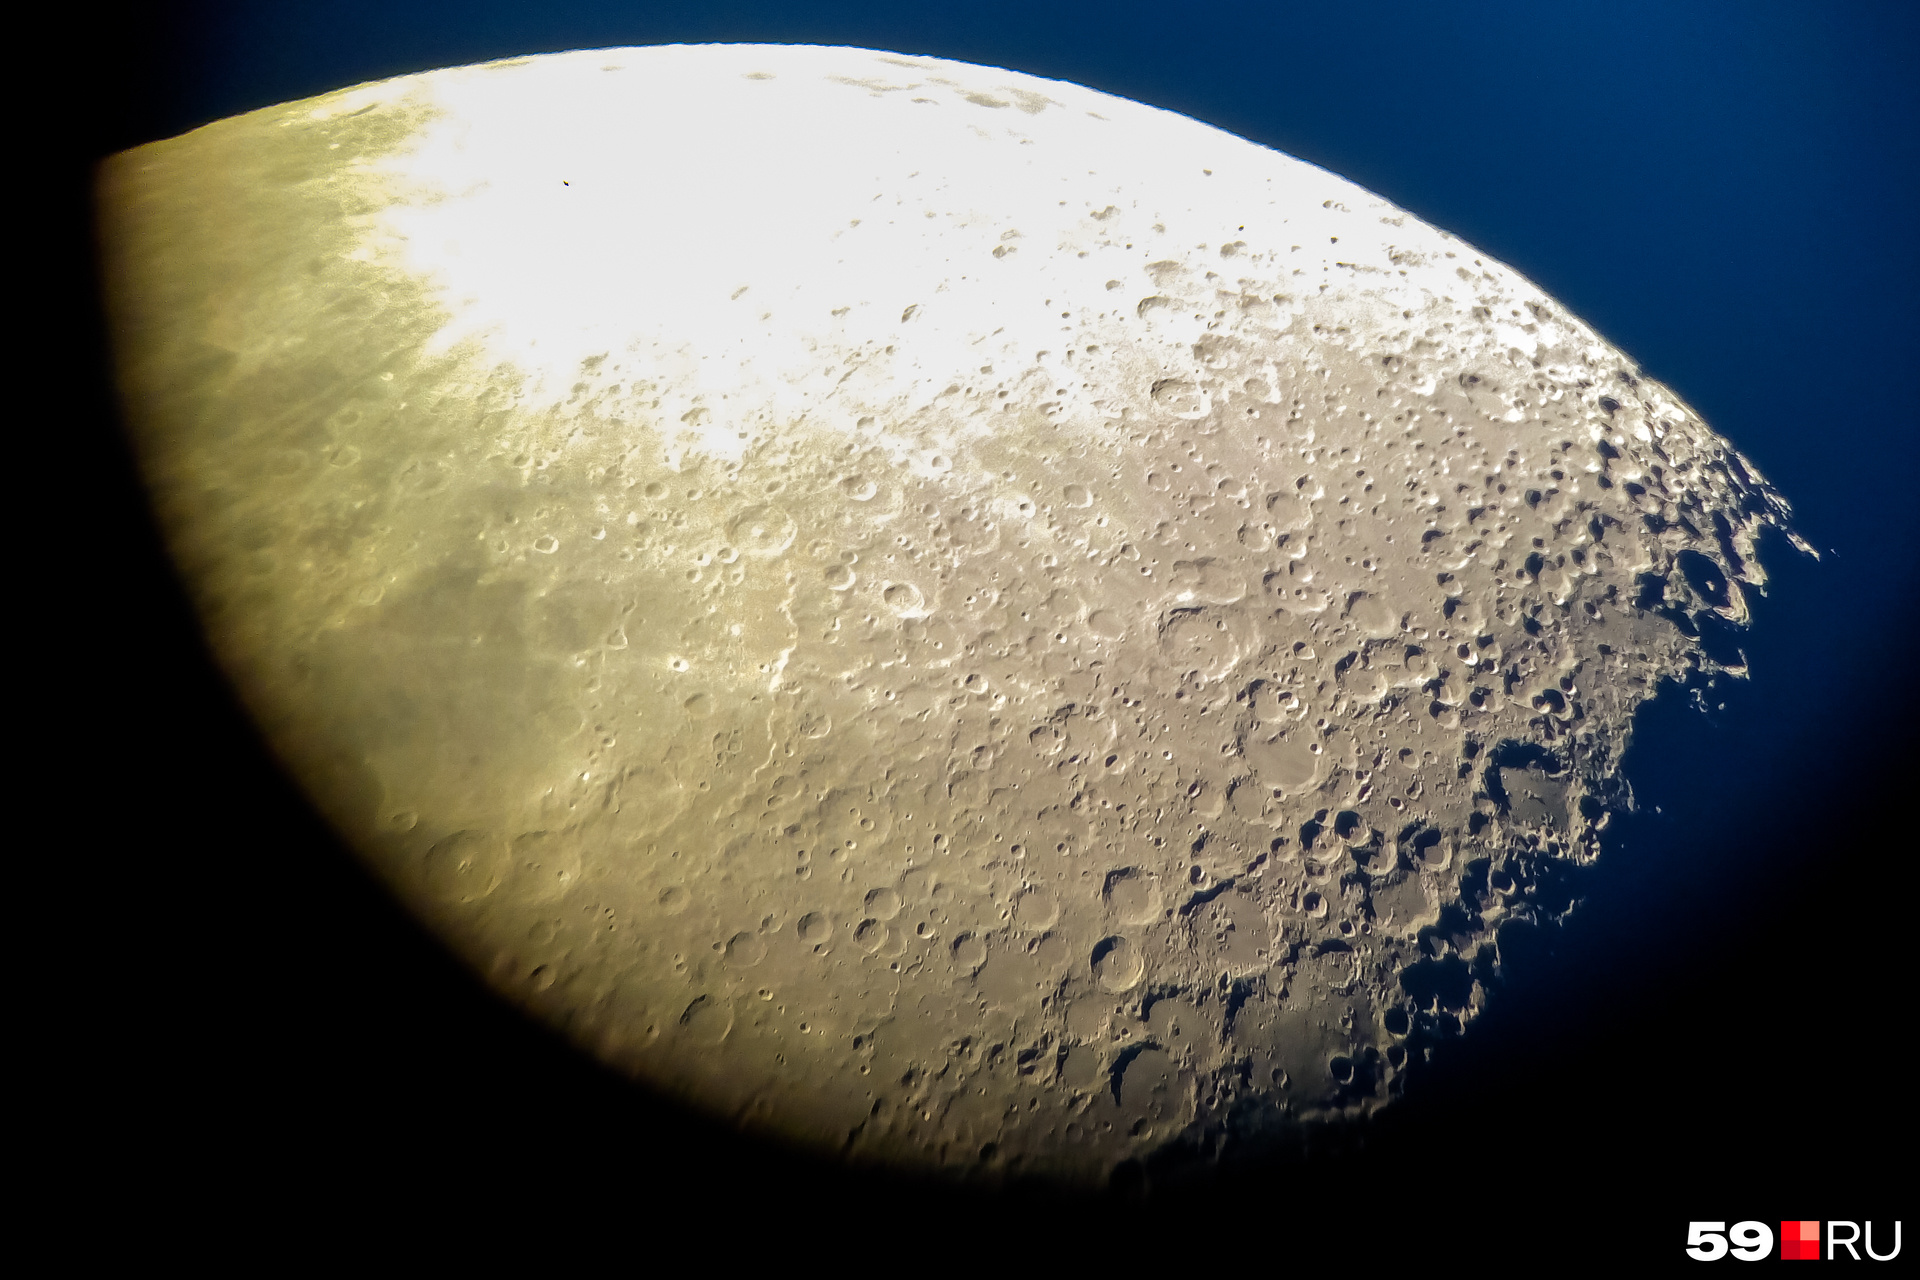 Нашему фотографу удалось сфотографировать Луну через телескоп. Вот такая красота получилась! 